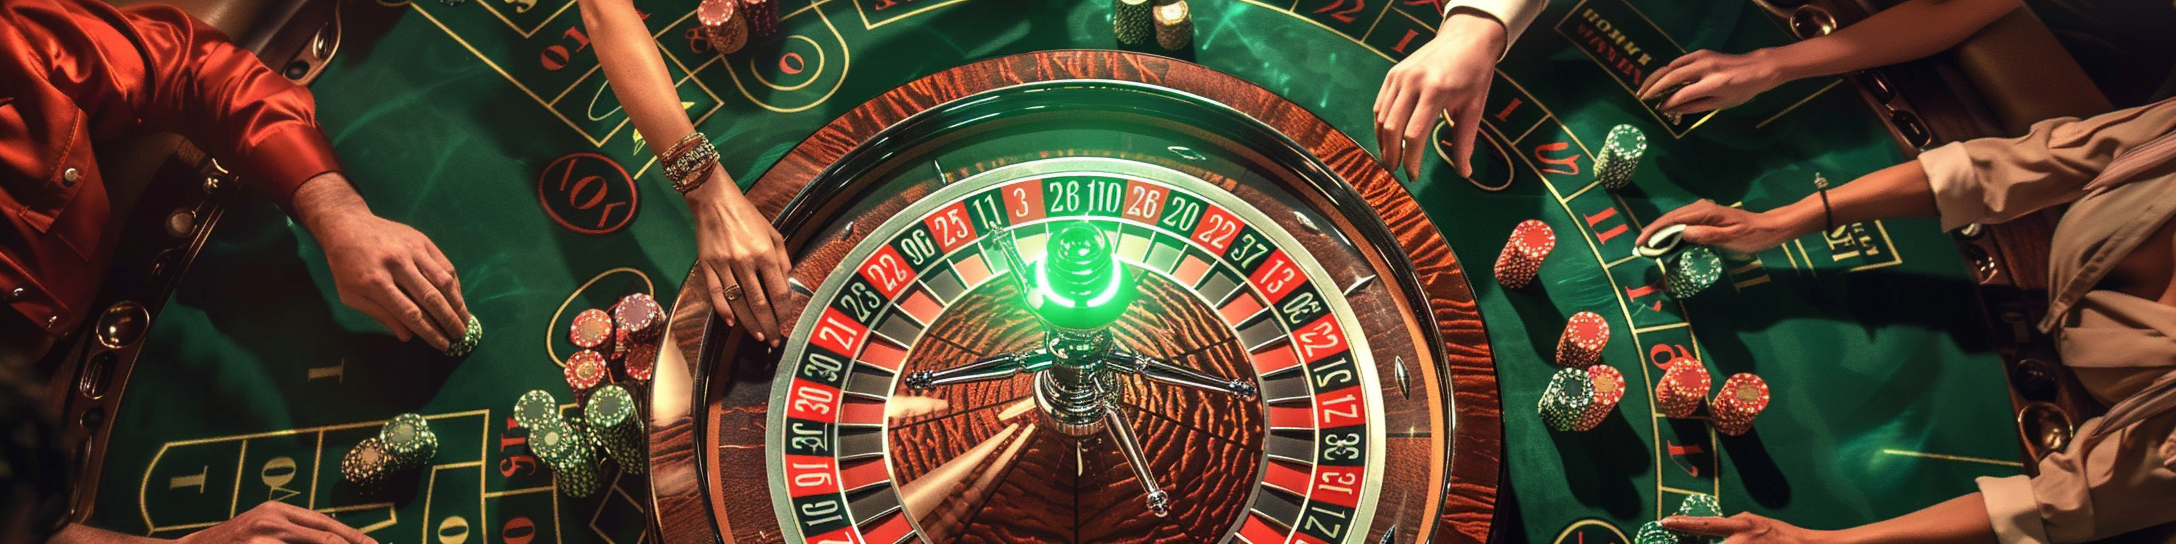 joueurs jouant à la roulette dans un casino